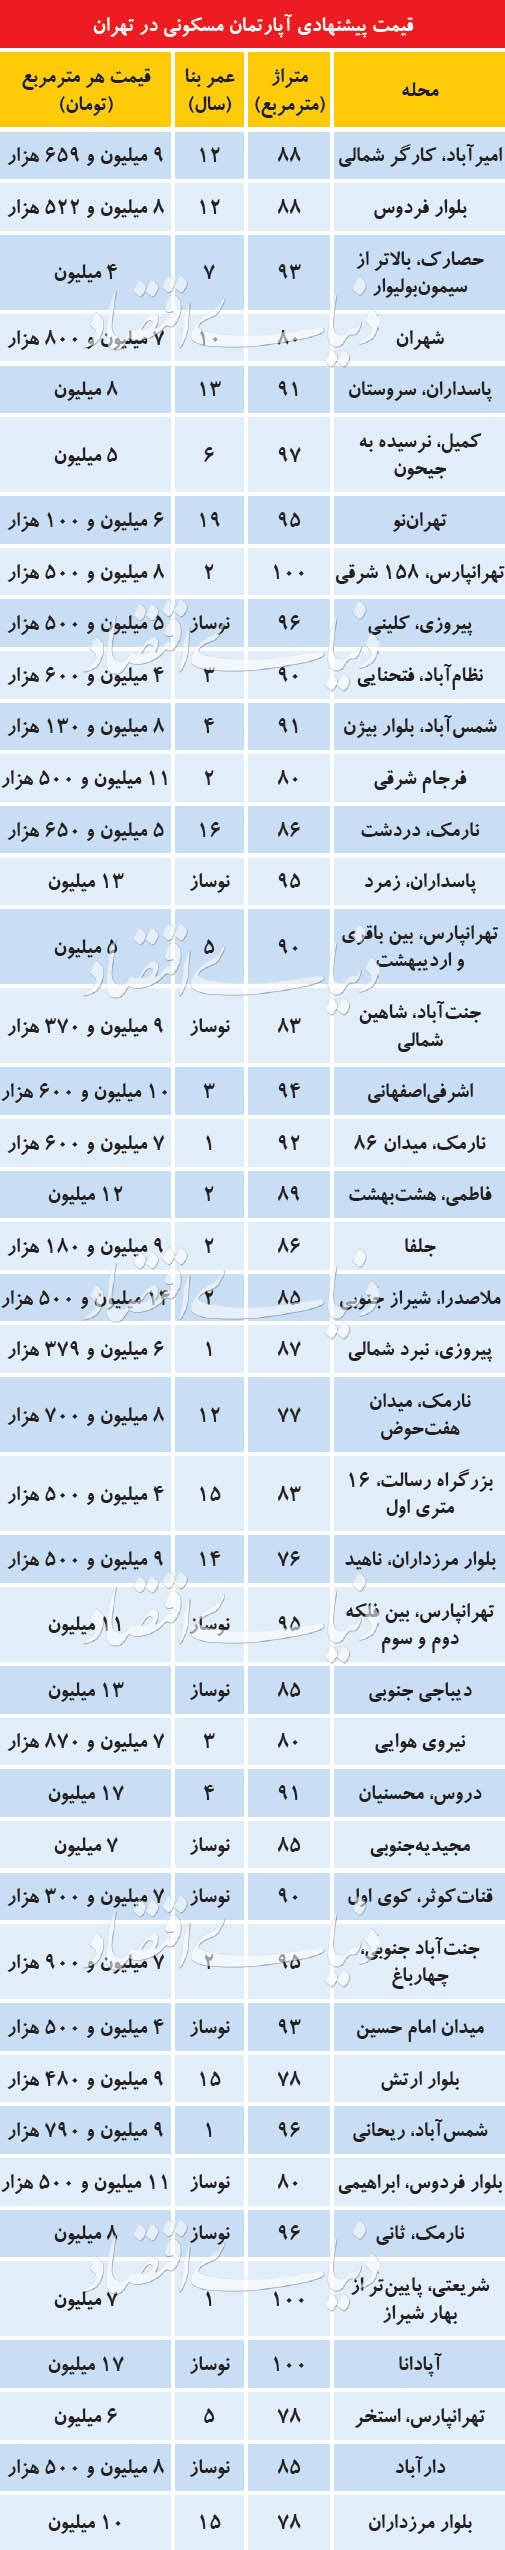 قیمت مسکن در محلات مختلف تهران در خرداد ۹۷